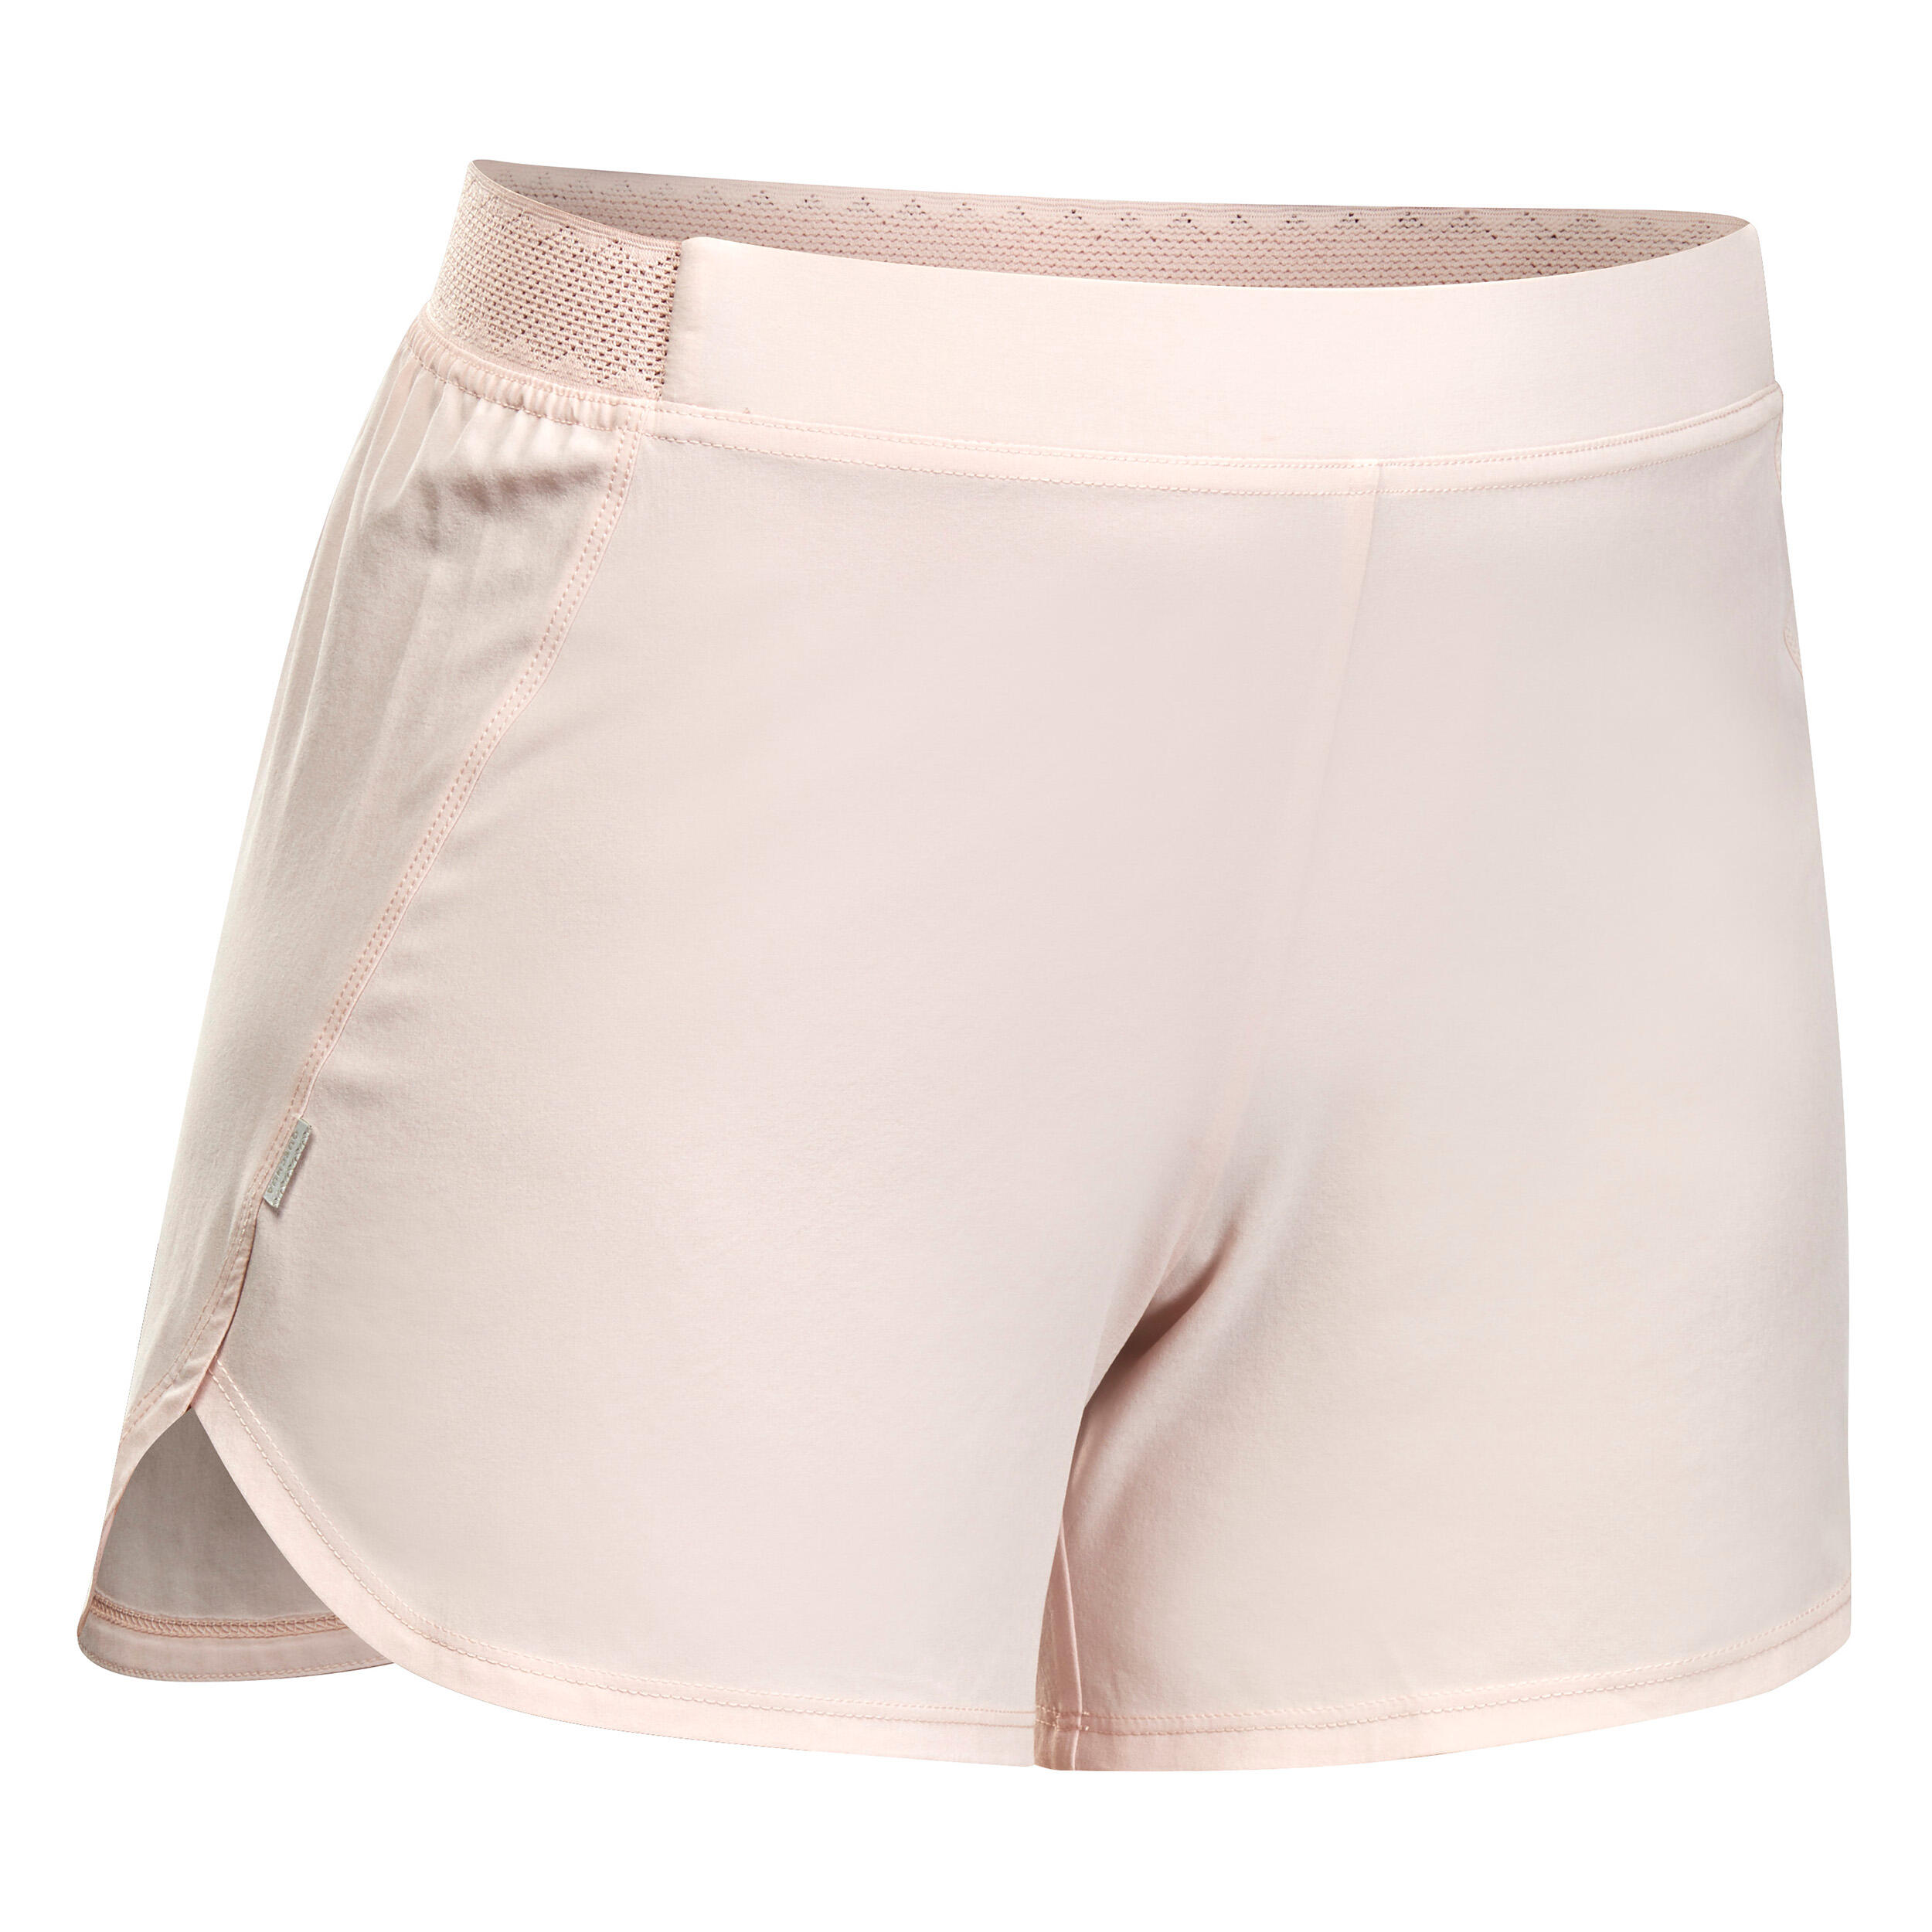 Pantalon scurt pentru purtare pe sub rochie Drumeție în natură Roz Damă La Oferta Online decathlon imagine La Oferta Online